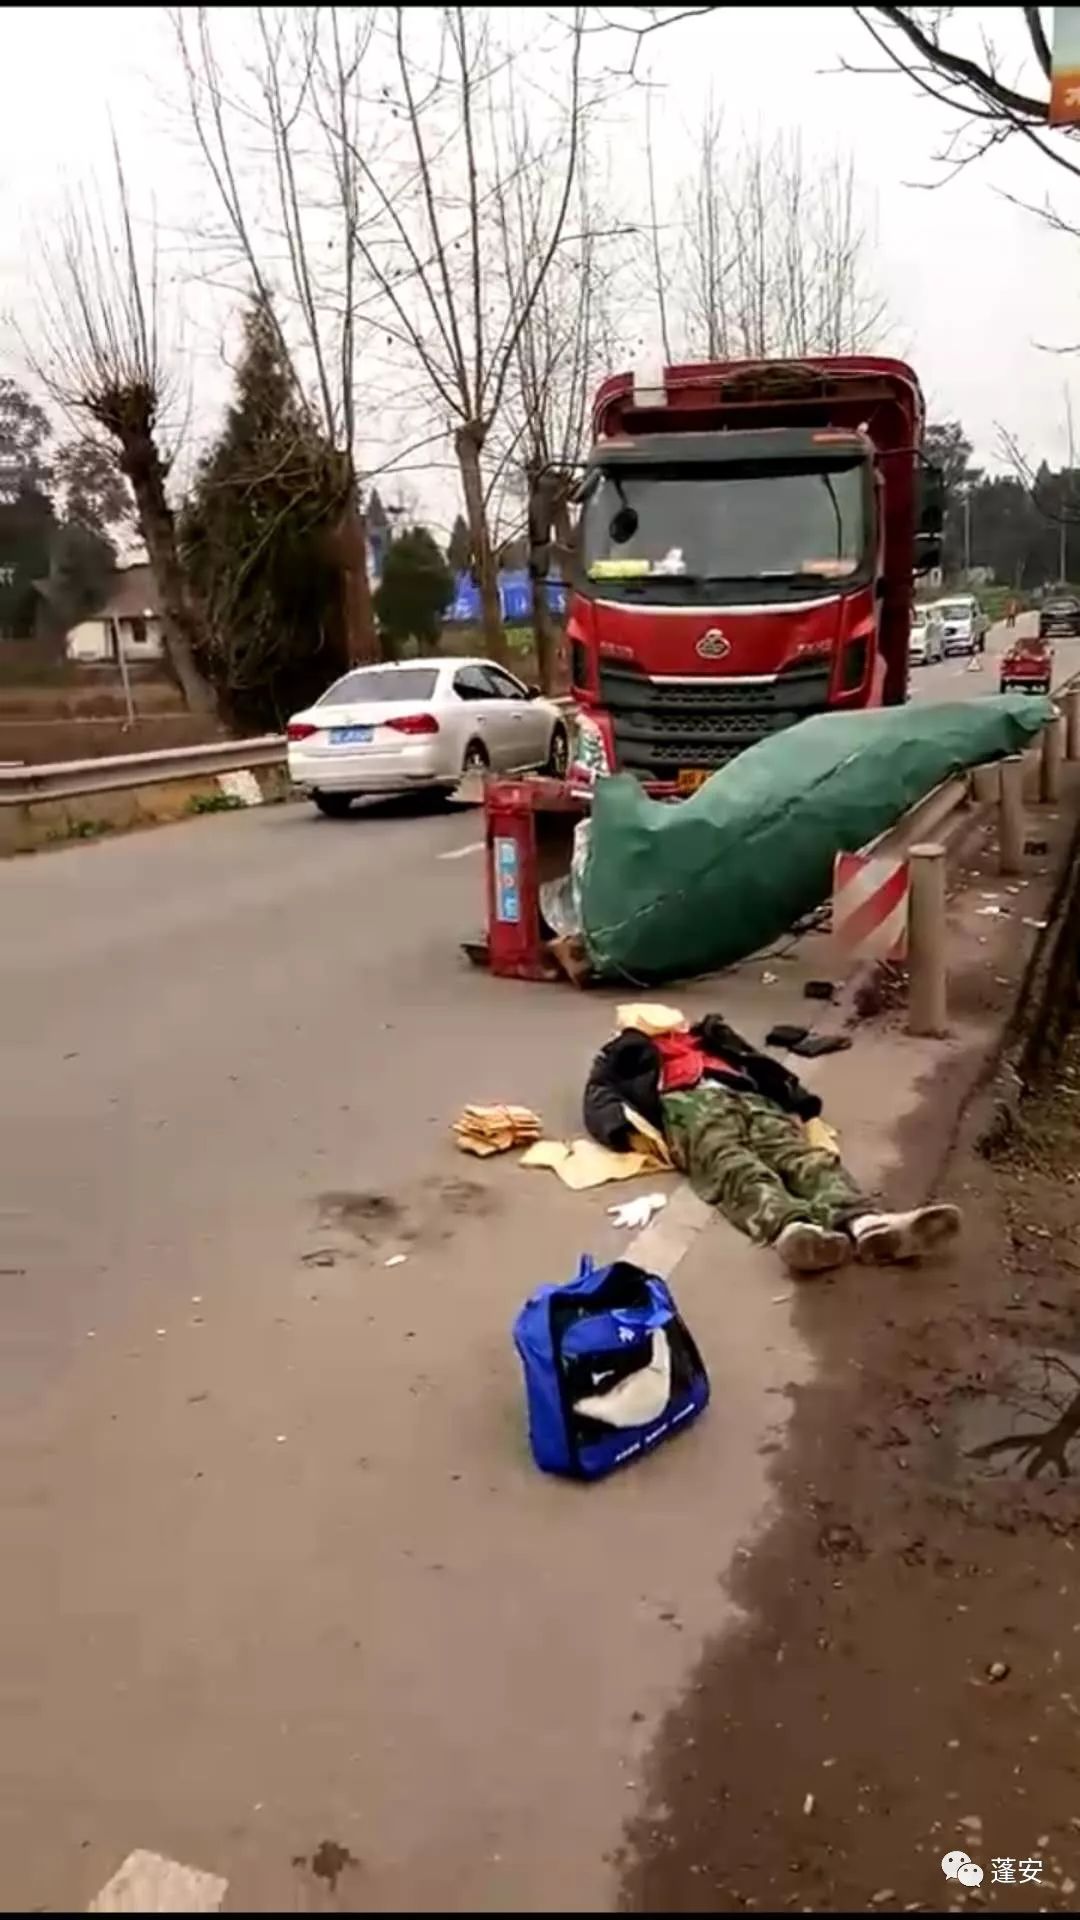 蓬安县兴旺加油站旁发生一起车祸,一辆红色大货车把一骑三轮摩托车的